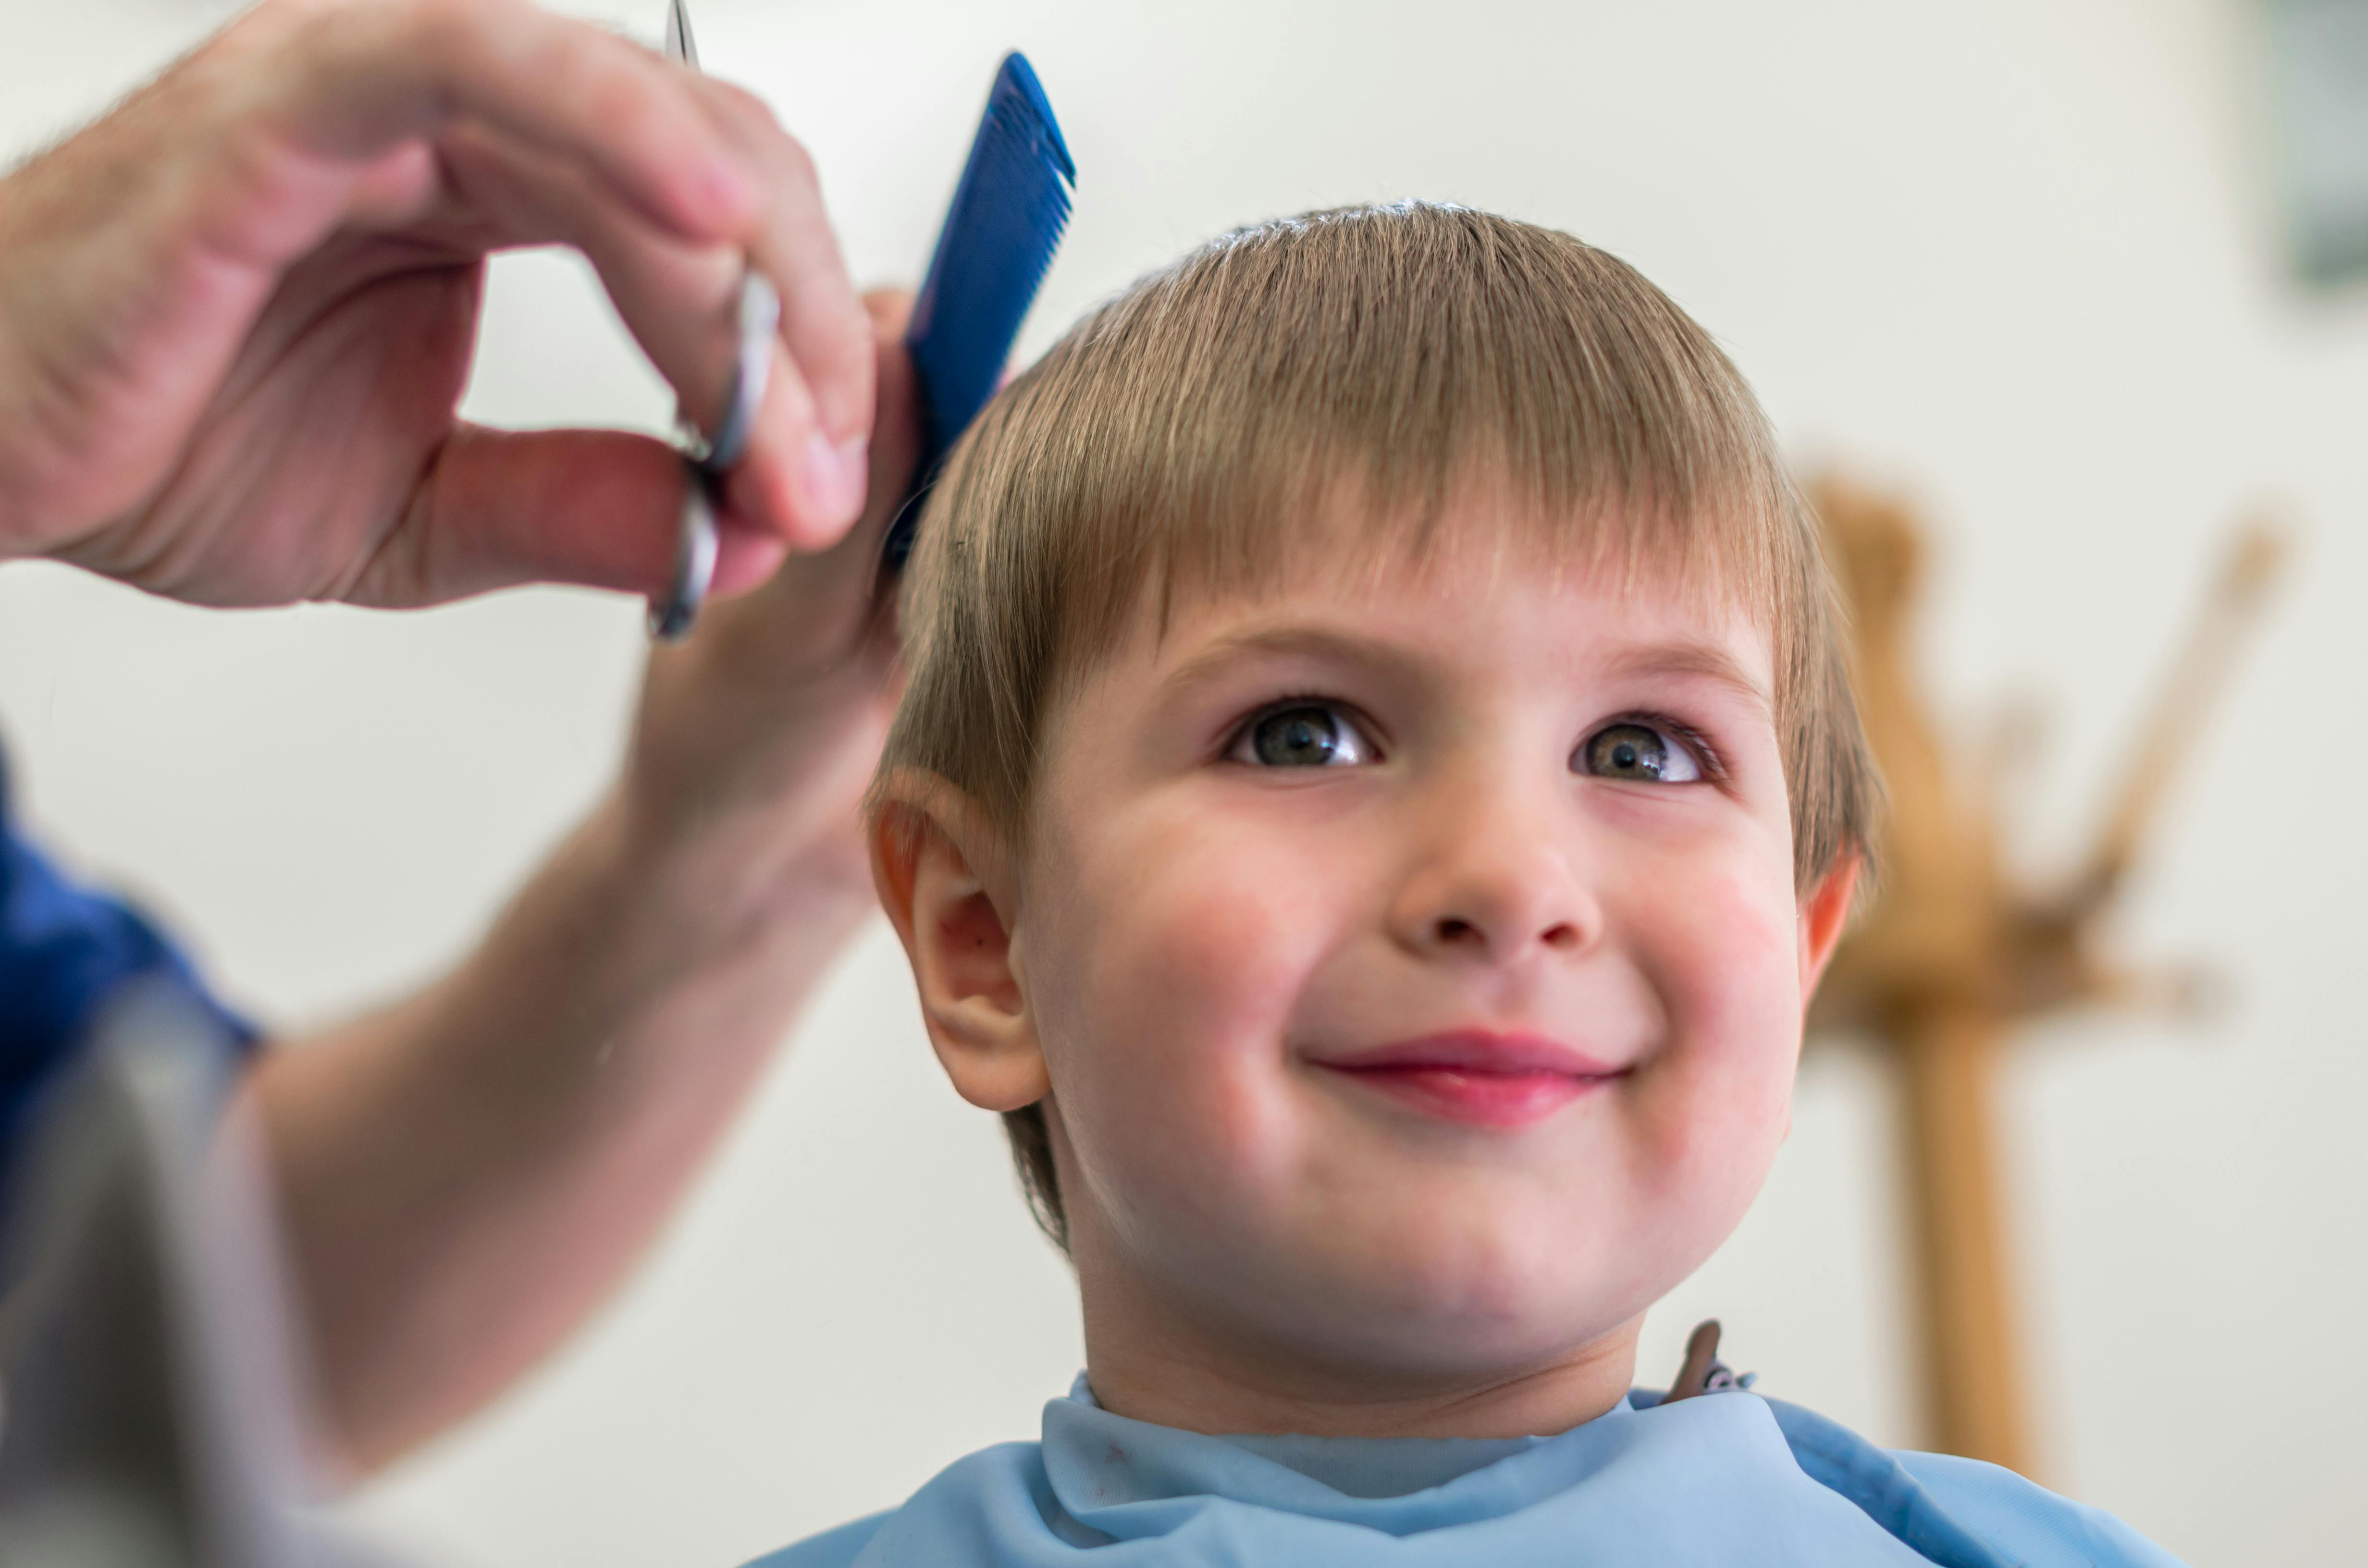 A little boy smiling while having his hair cut.